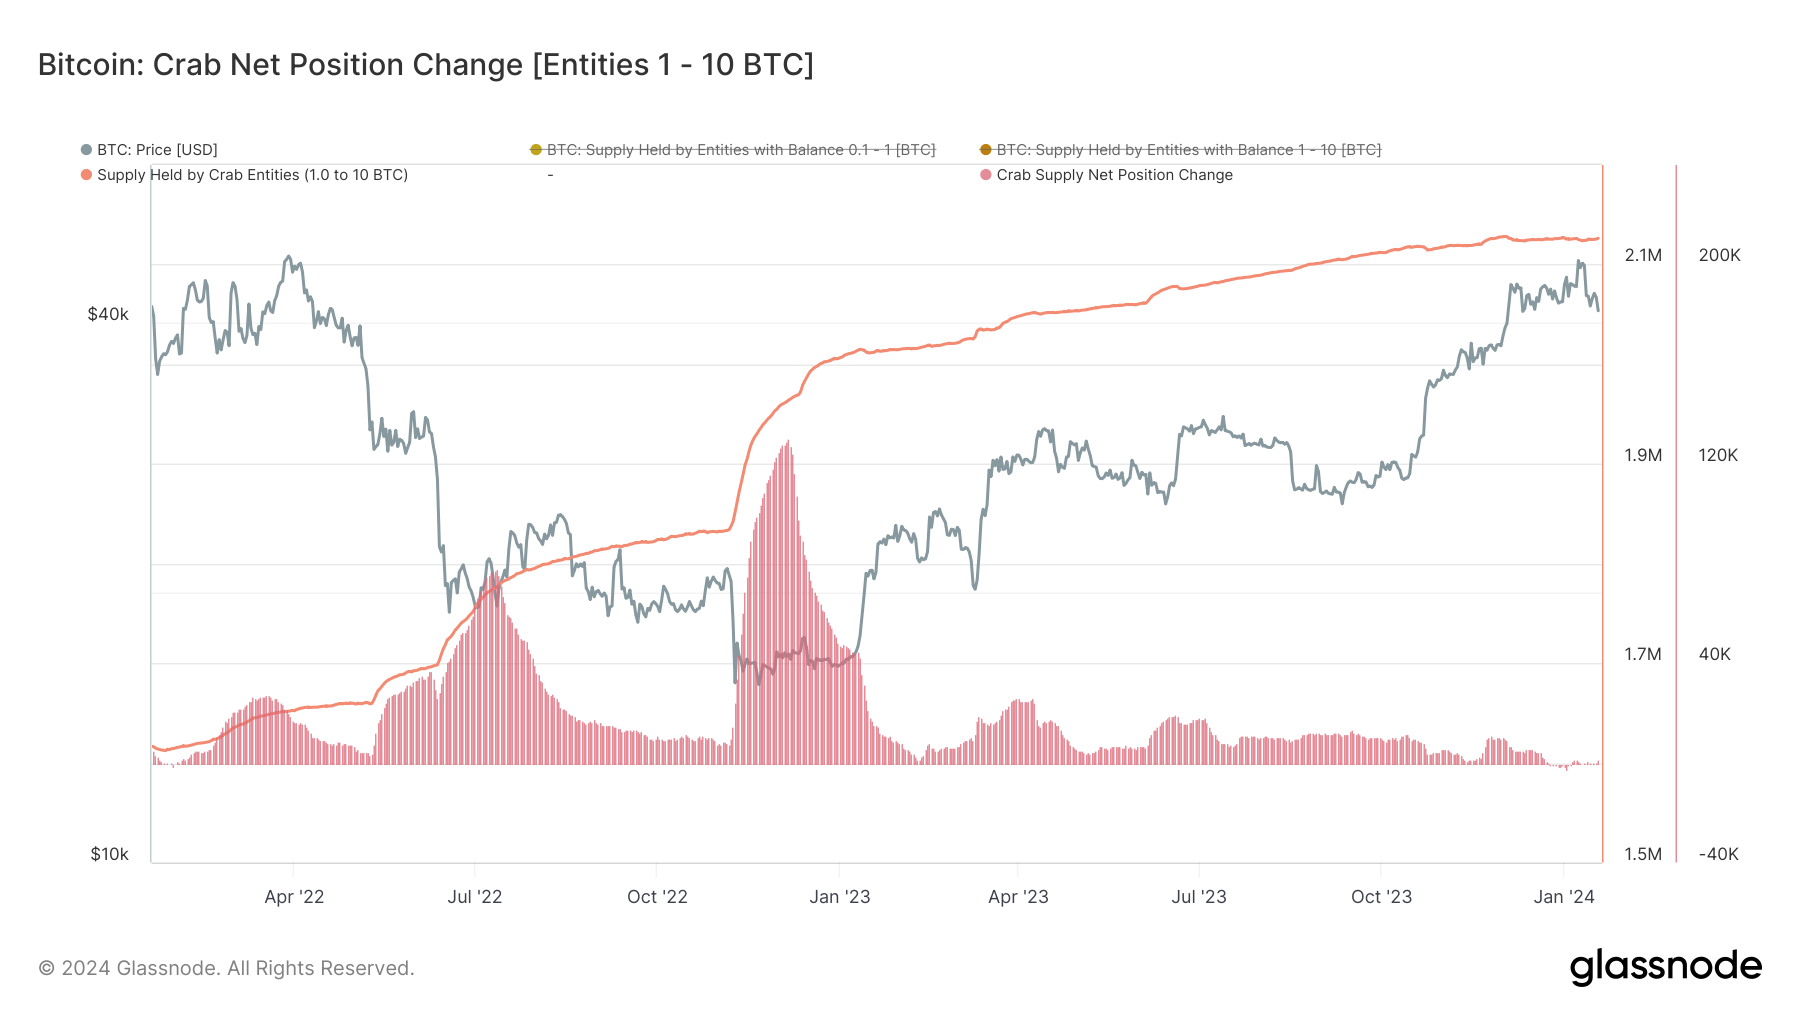 Whale mendalami Bitcoin lebih dalam karena pemegang saham kecil mundur di tengah tekanan ETF